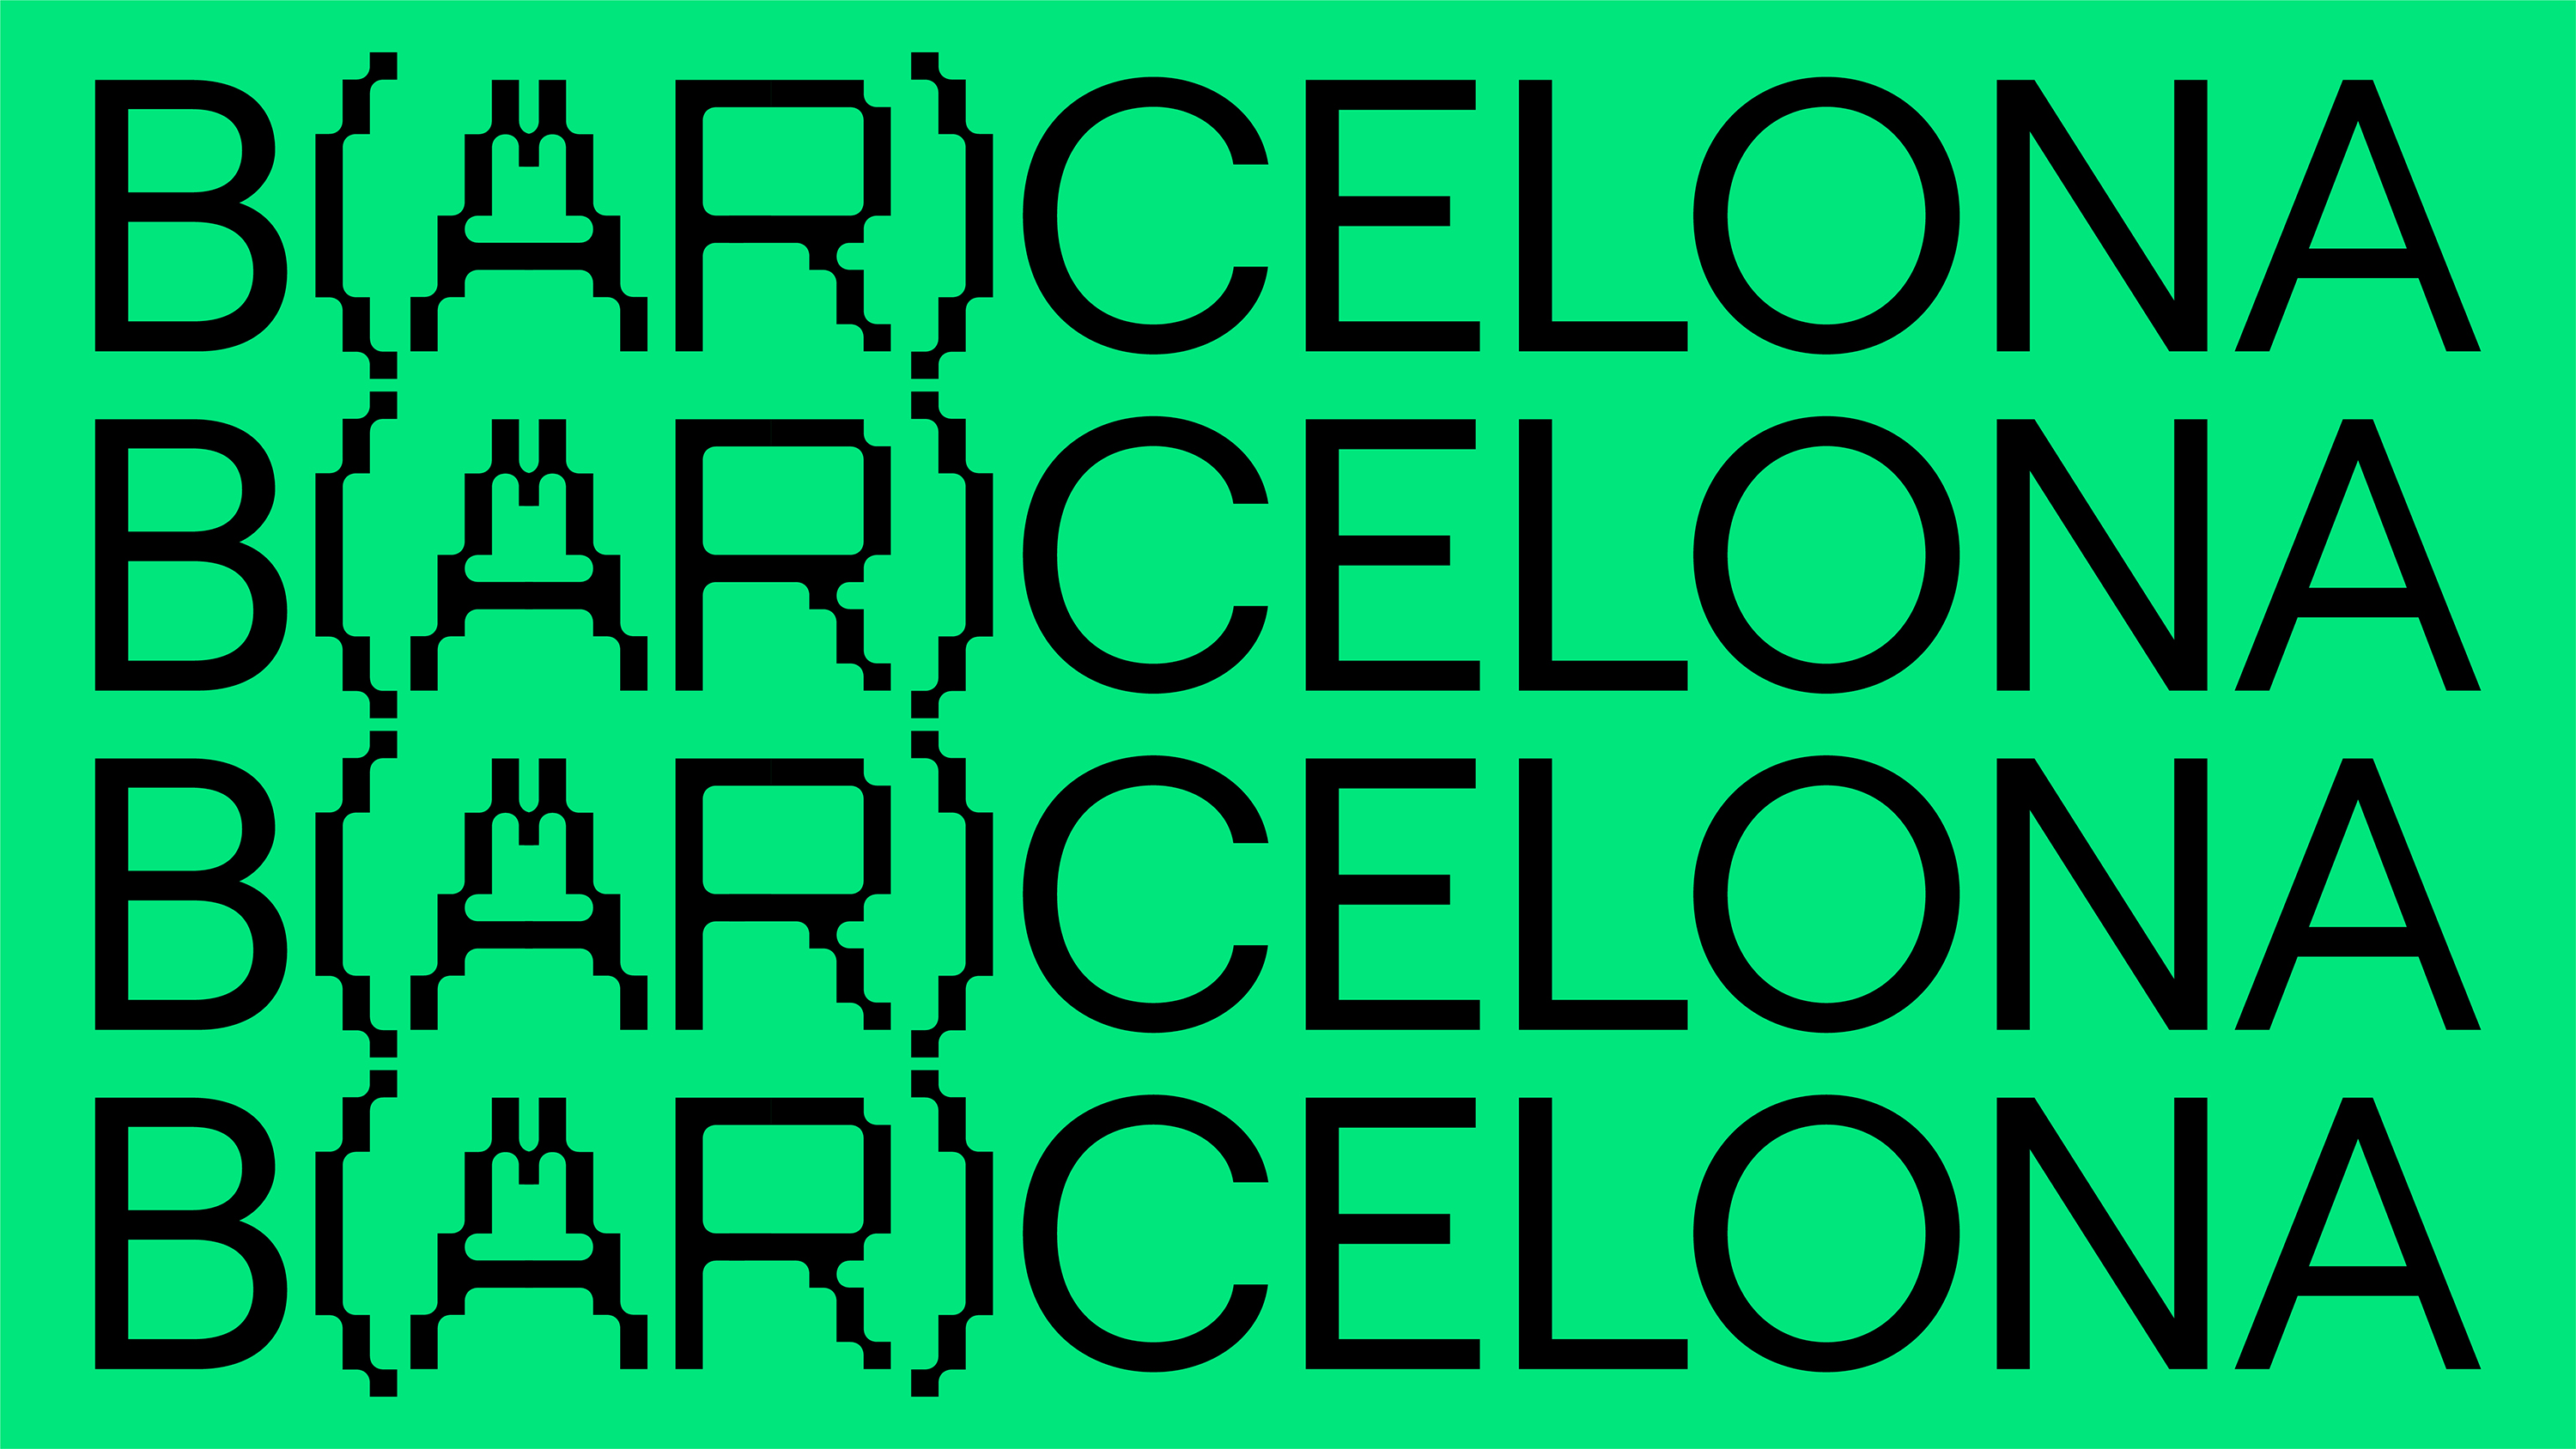 Presentem B(AR)CELONA, la nova app de rutes amb realitat augmentada | Barcelona centre de Disseny